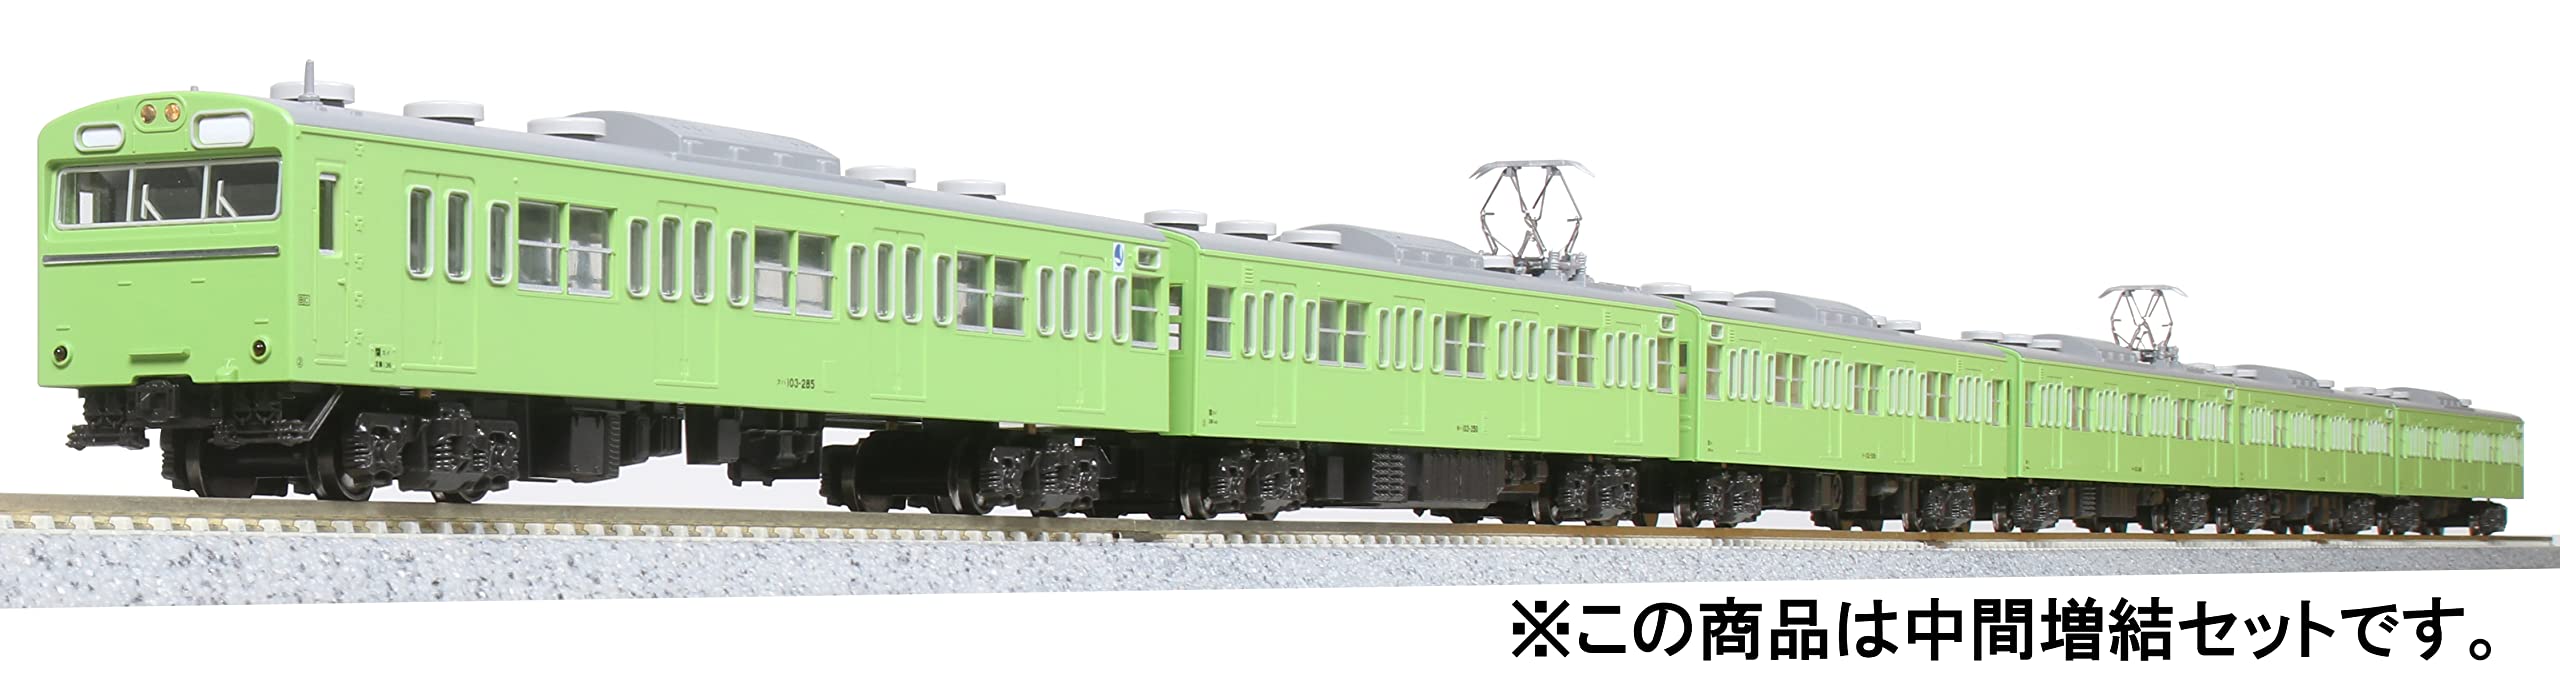 Kato N Gauge 103 Series Ensemble intermédiaire de 3 voitures pour train modèle ferroviaire 10-1744C